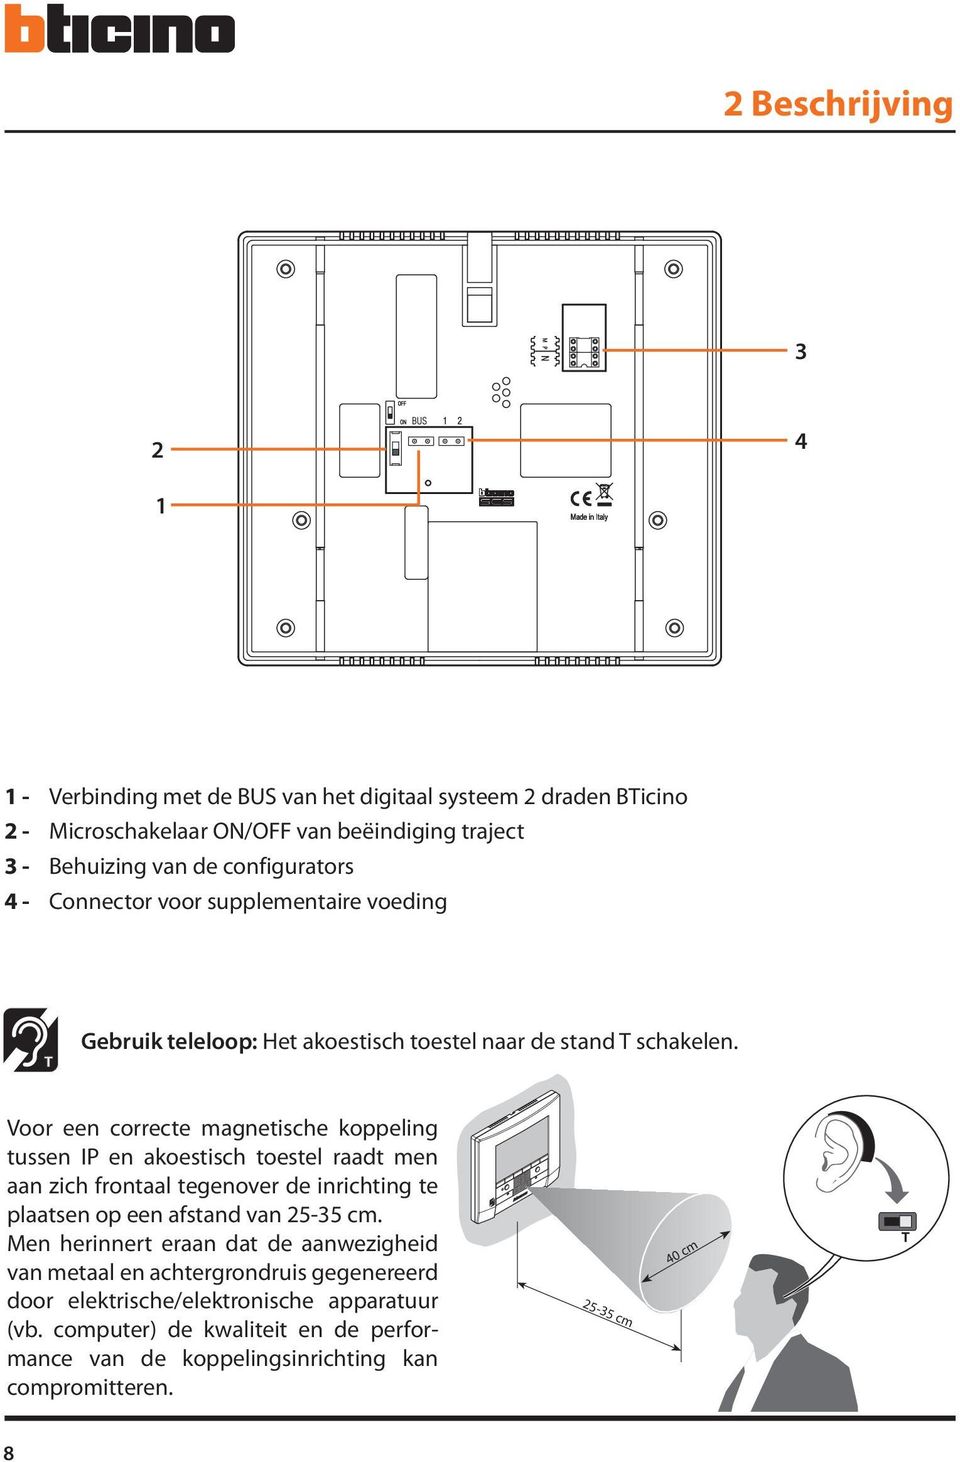 Voor een correcte magnetische koppeling tussen IP en akoestisch toestel raadt men aan zich frontaal tegenover de inrichting te plaatsen op een afstand van 25-35 cm.